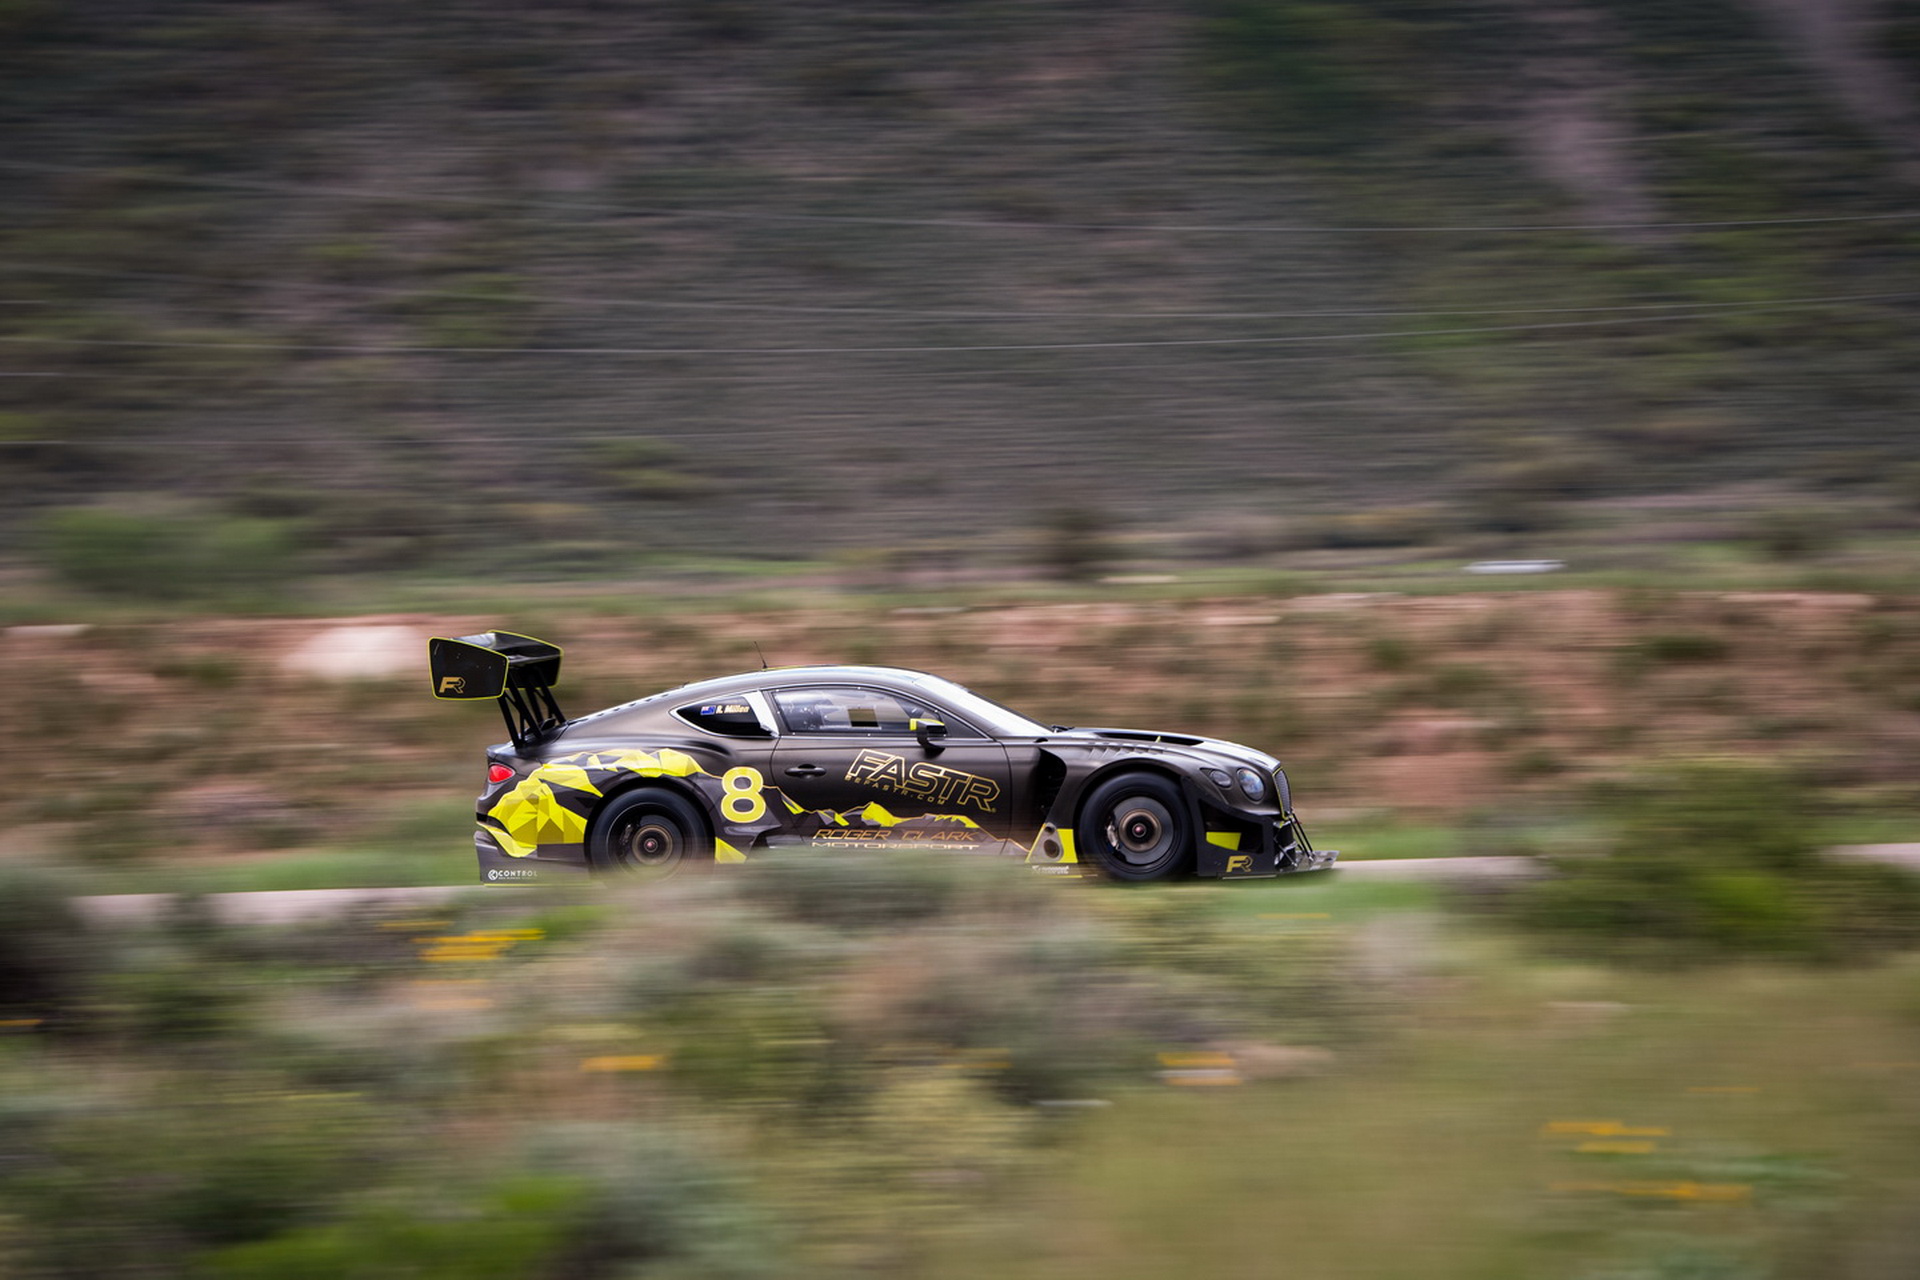 Continental GT3 Pikes Peak проходит финальные тестирования